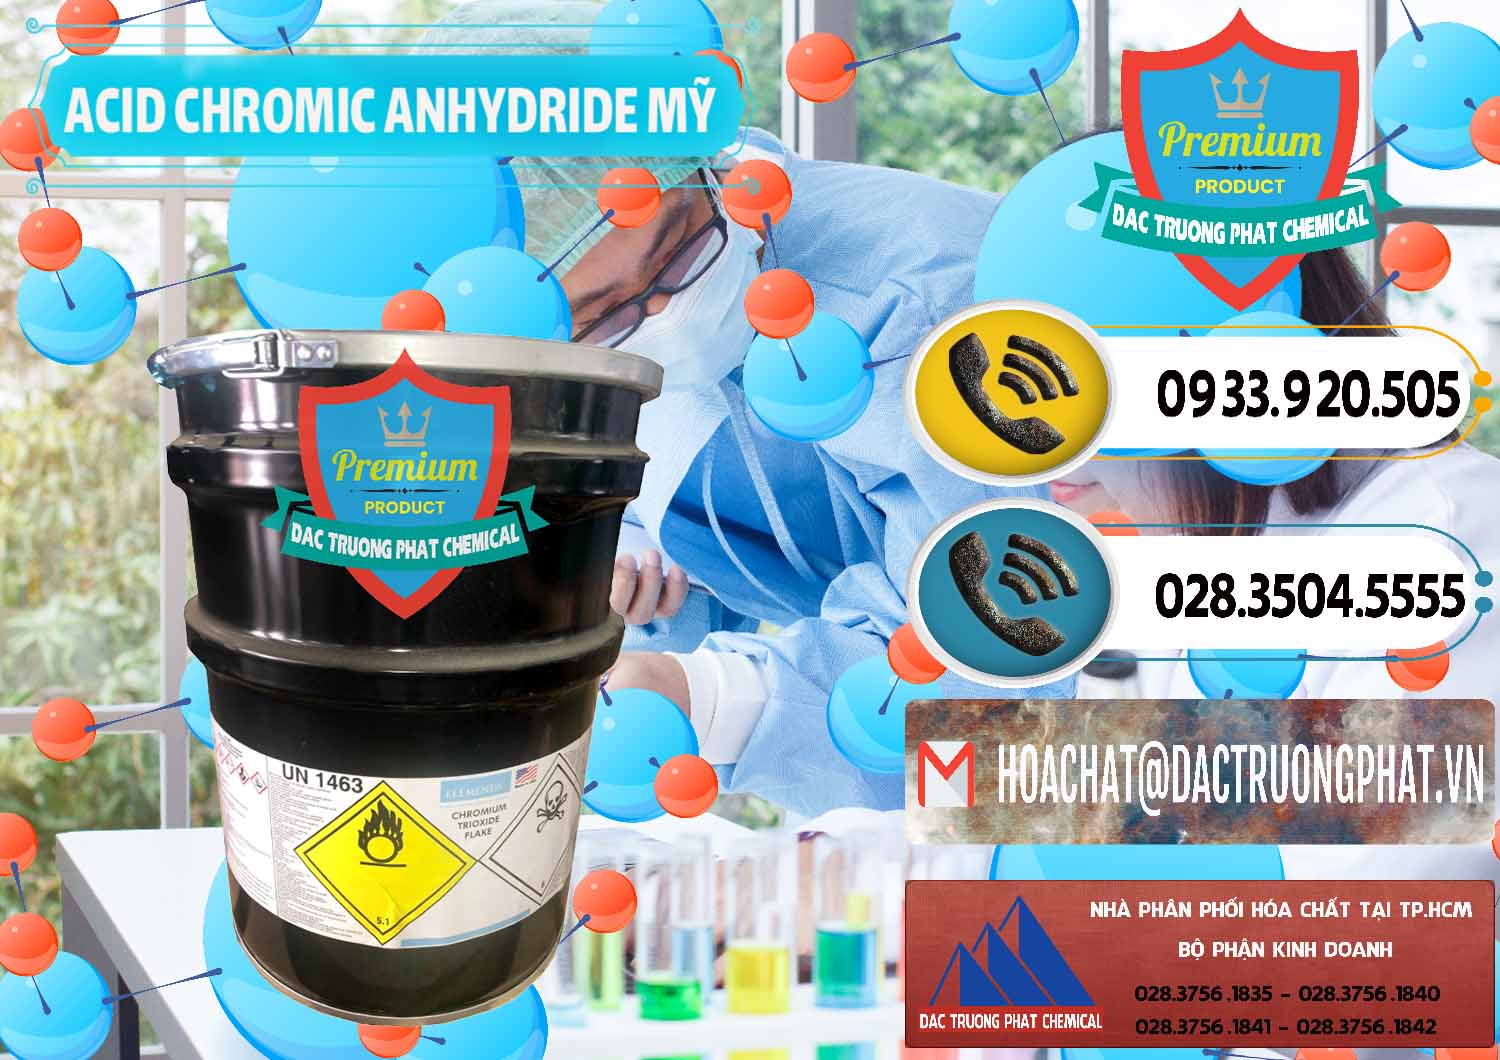 Đơn vị phân phối & bán Acid Chromic Anhydride - Cromic CRO3 USA Mỹ - 0364 - Cty kinh doanh ( phân phối ) hóa chất tại TP.HCM - hoachatdetnhuom.vn